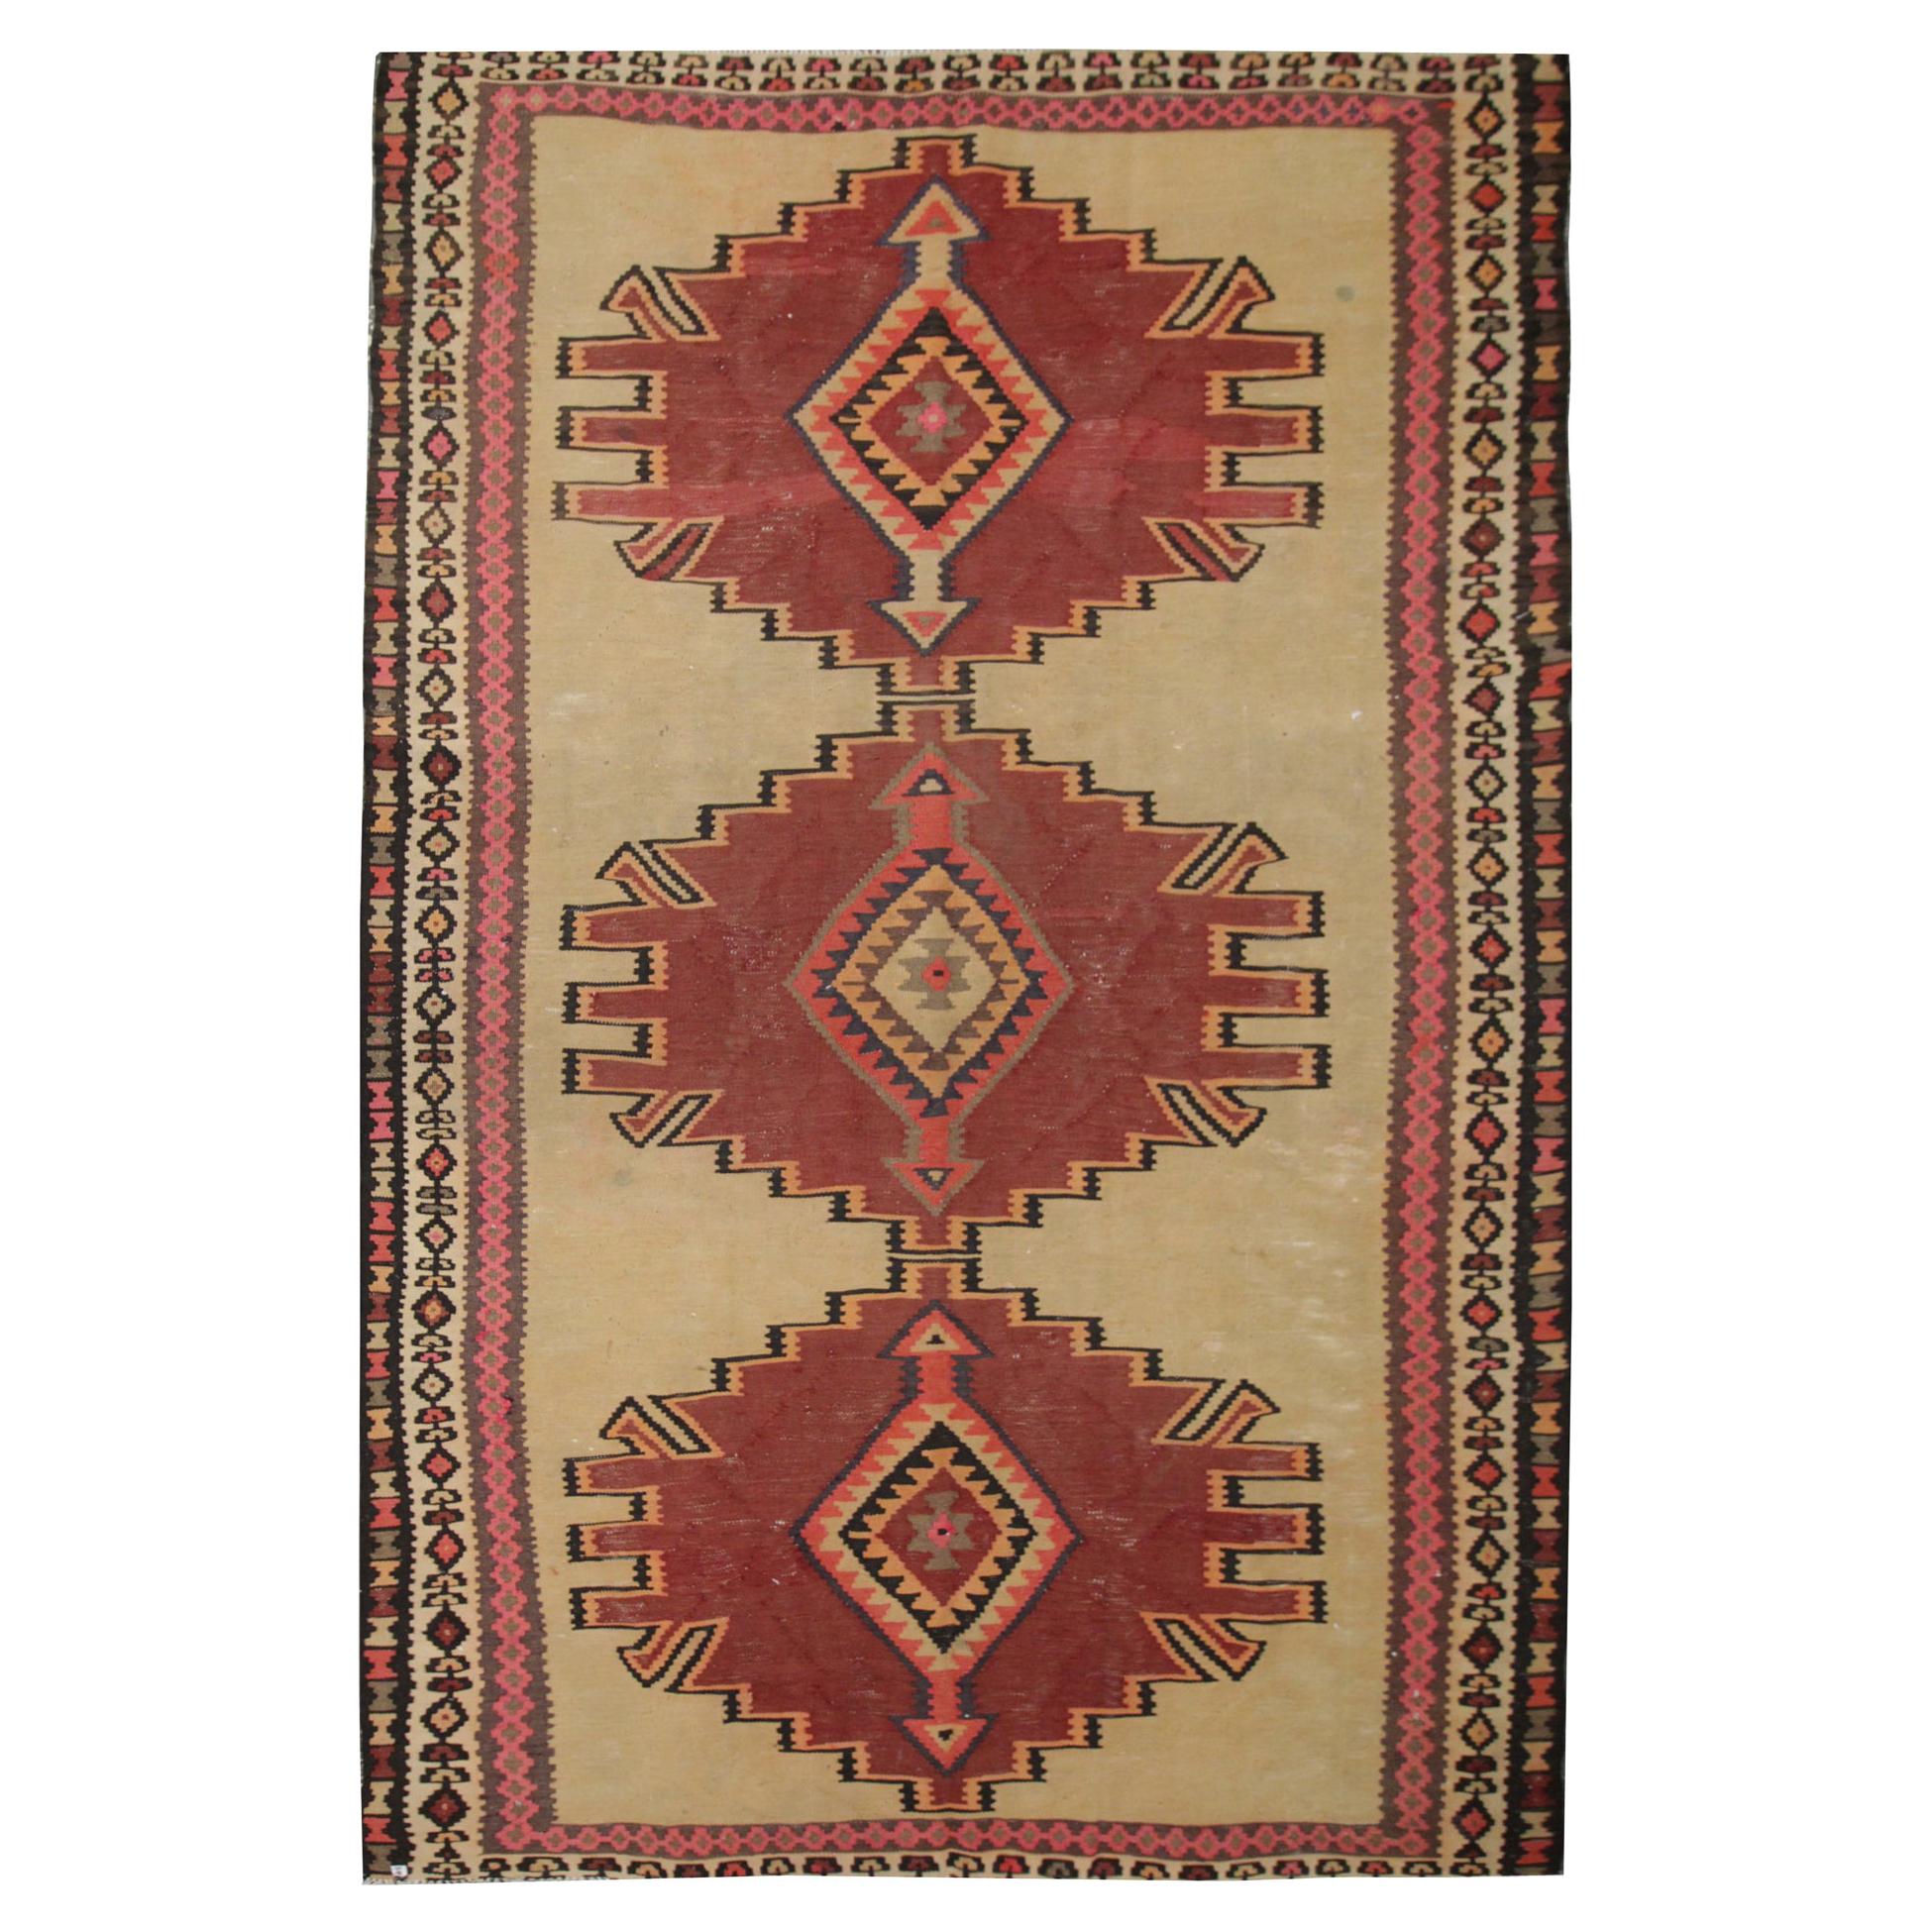 Tapis Kilim caucasien en laine rouge géométrique tissé à la main Tapis tribal